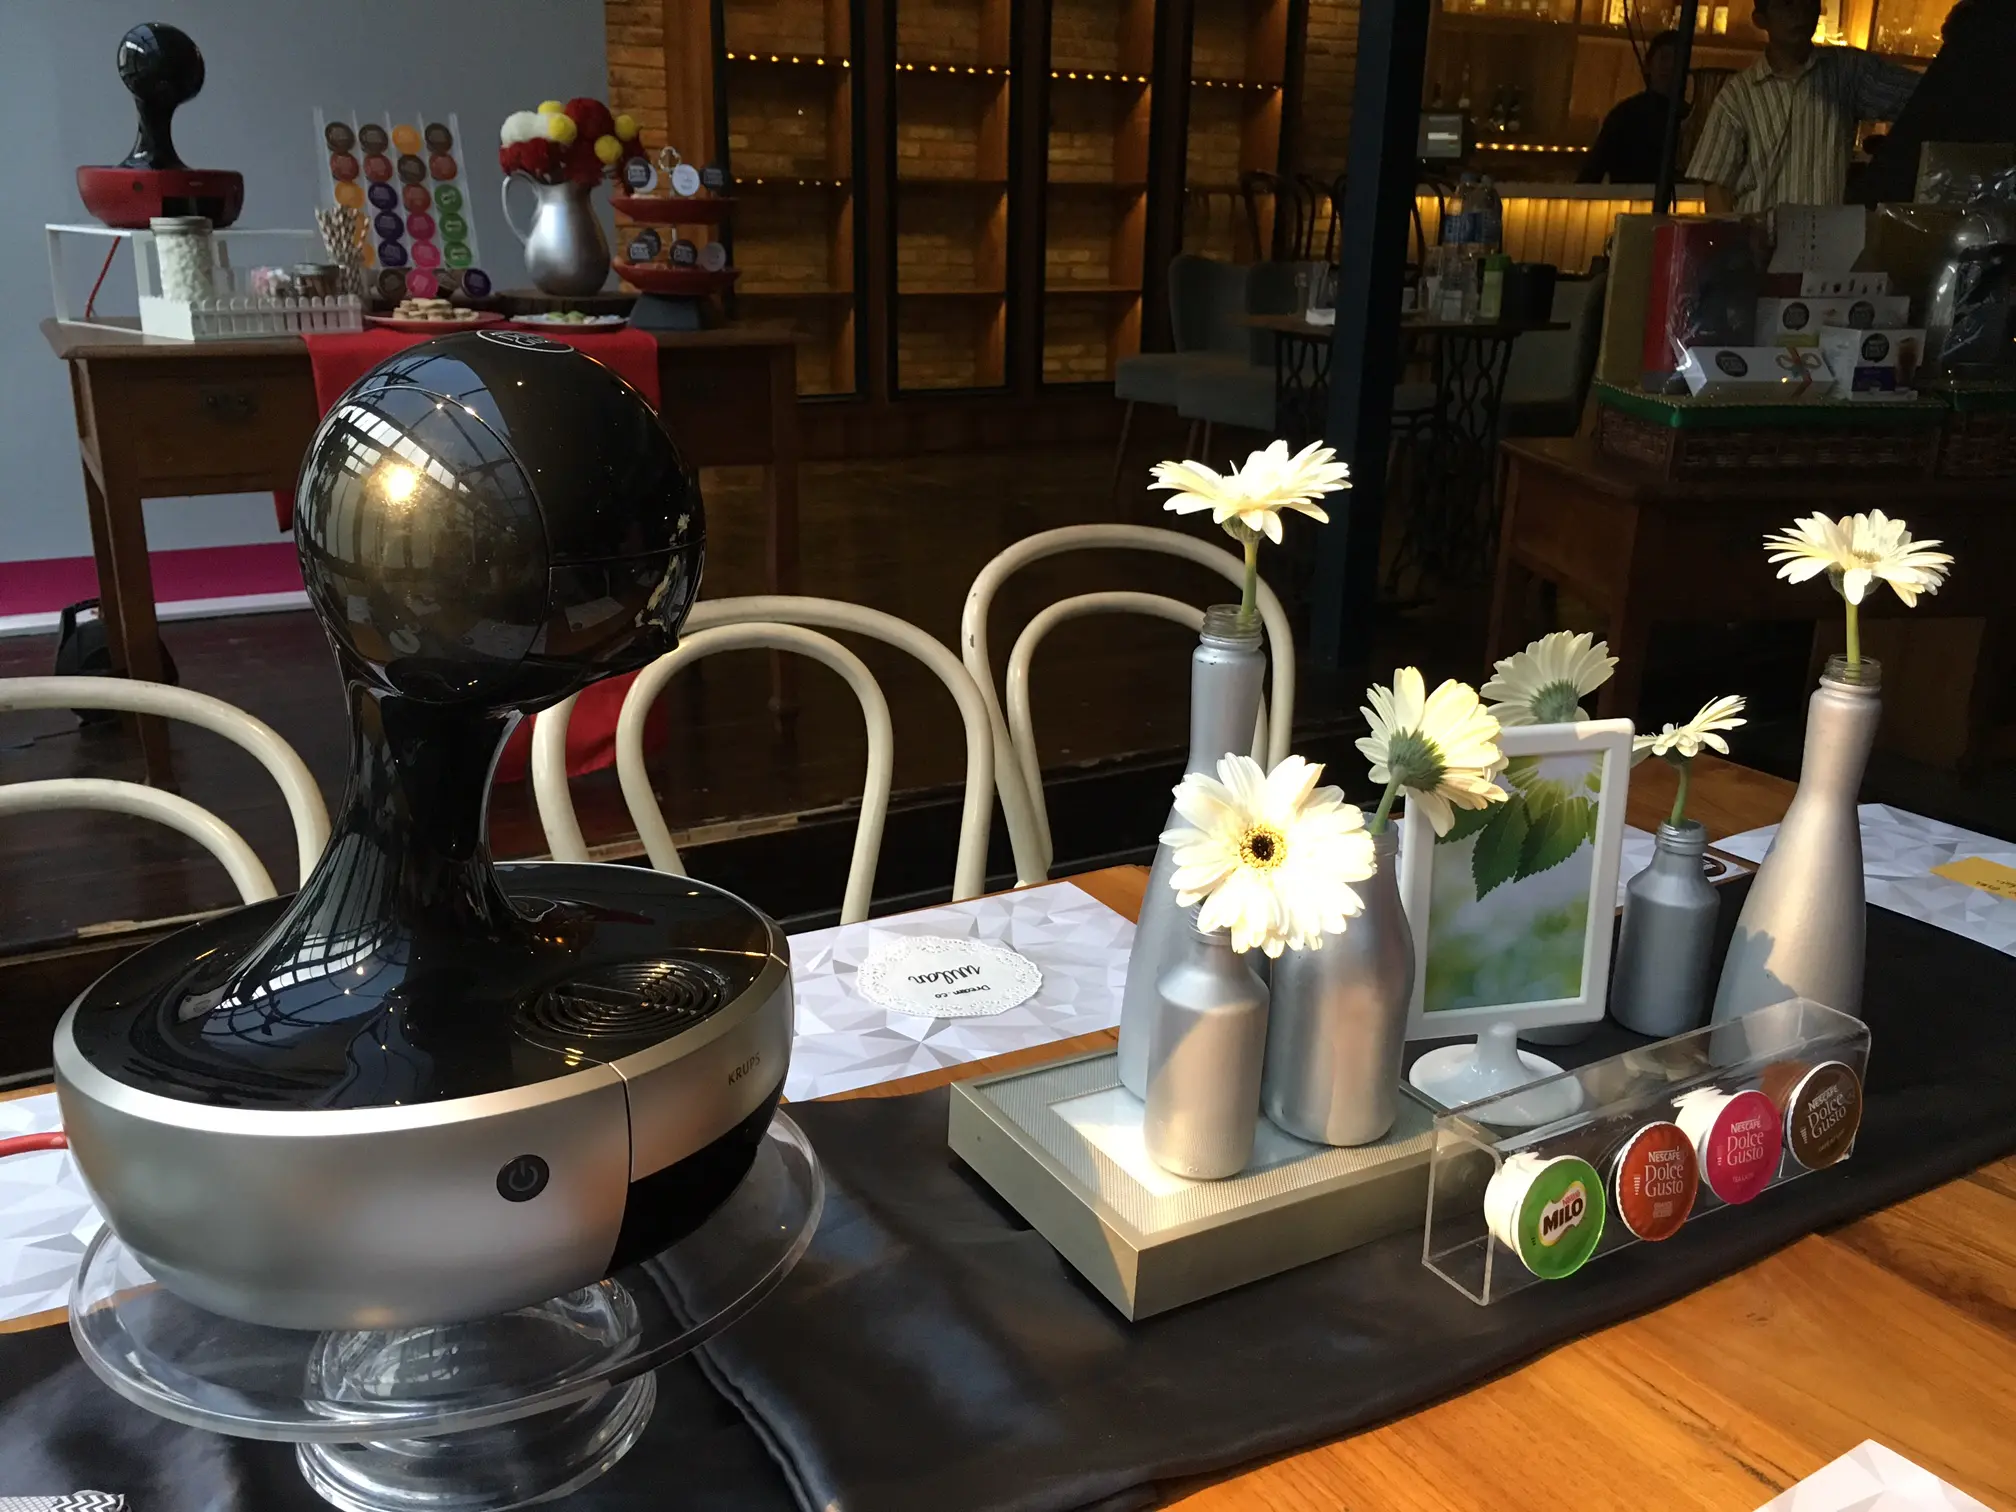 Mesin kopi untuk melengkapi dekorasi meja.